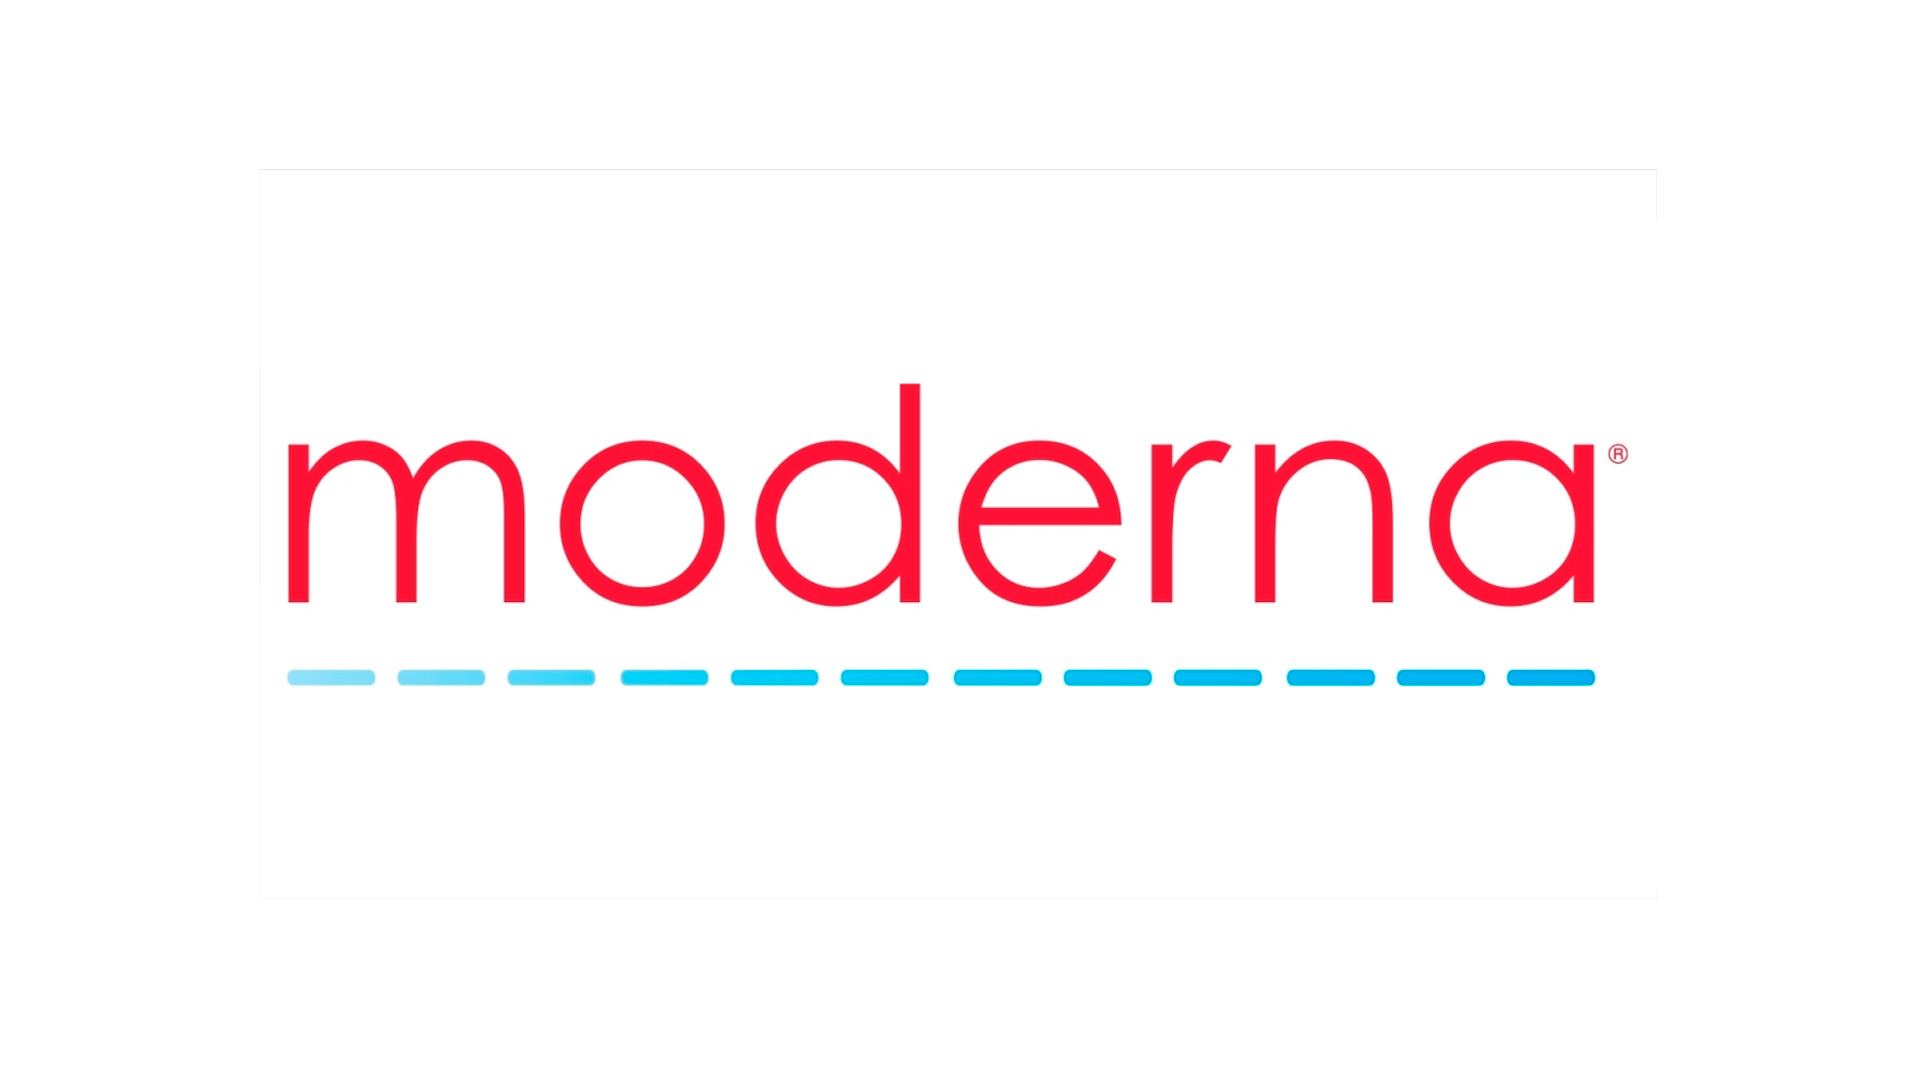 mejores-logos-farmaceutico-moderna-27